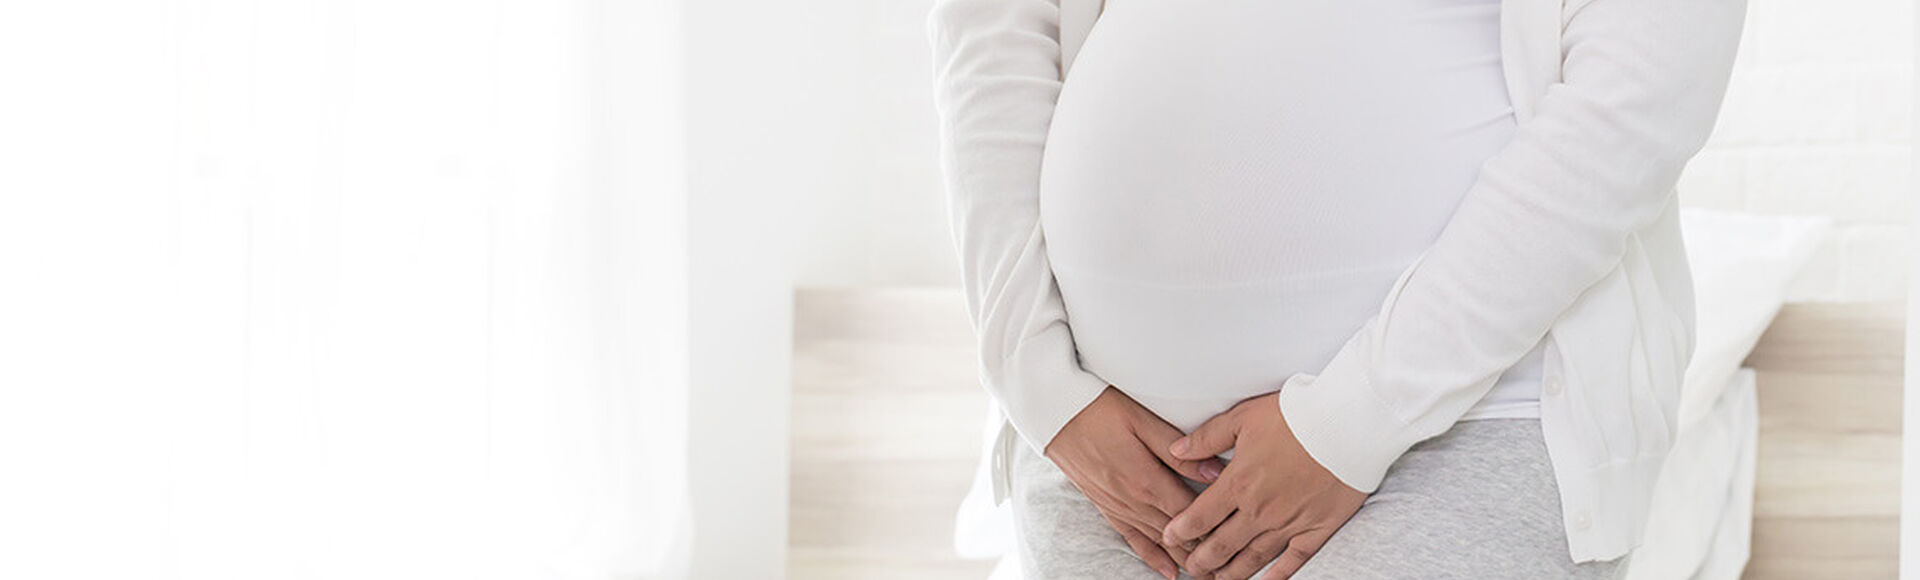 La falta de líquido amniotótico puede traer graves consecuencias para tu bebé | Más Abrazos by Huggies